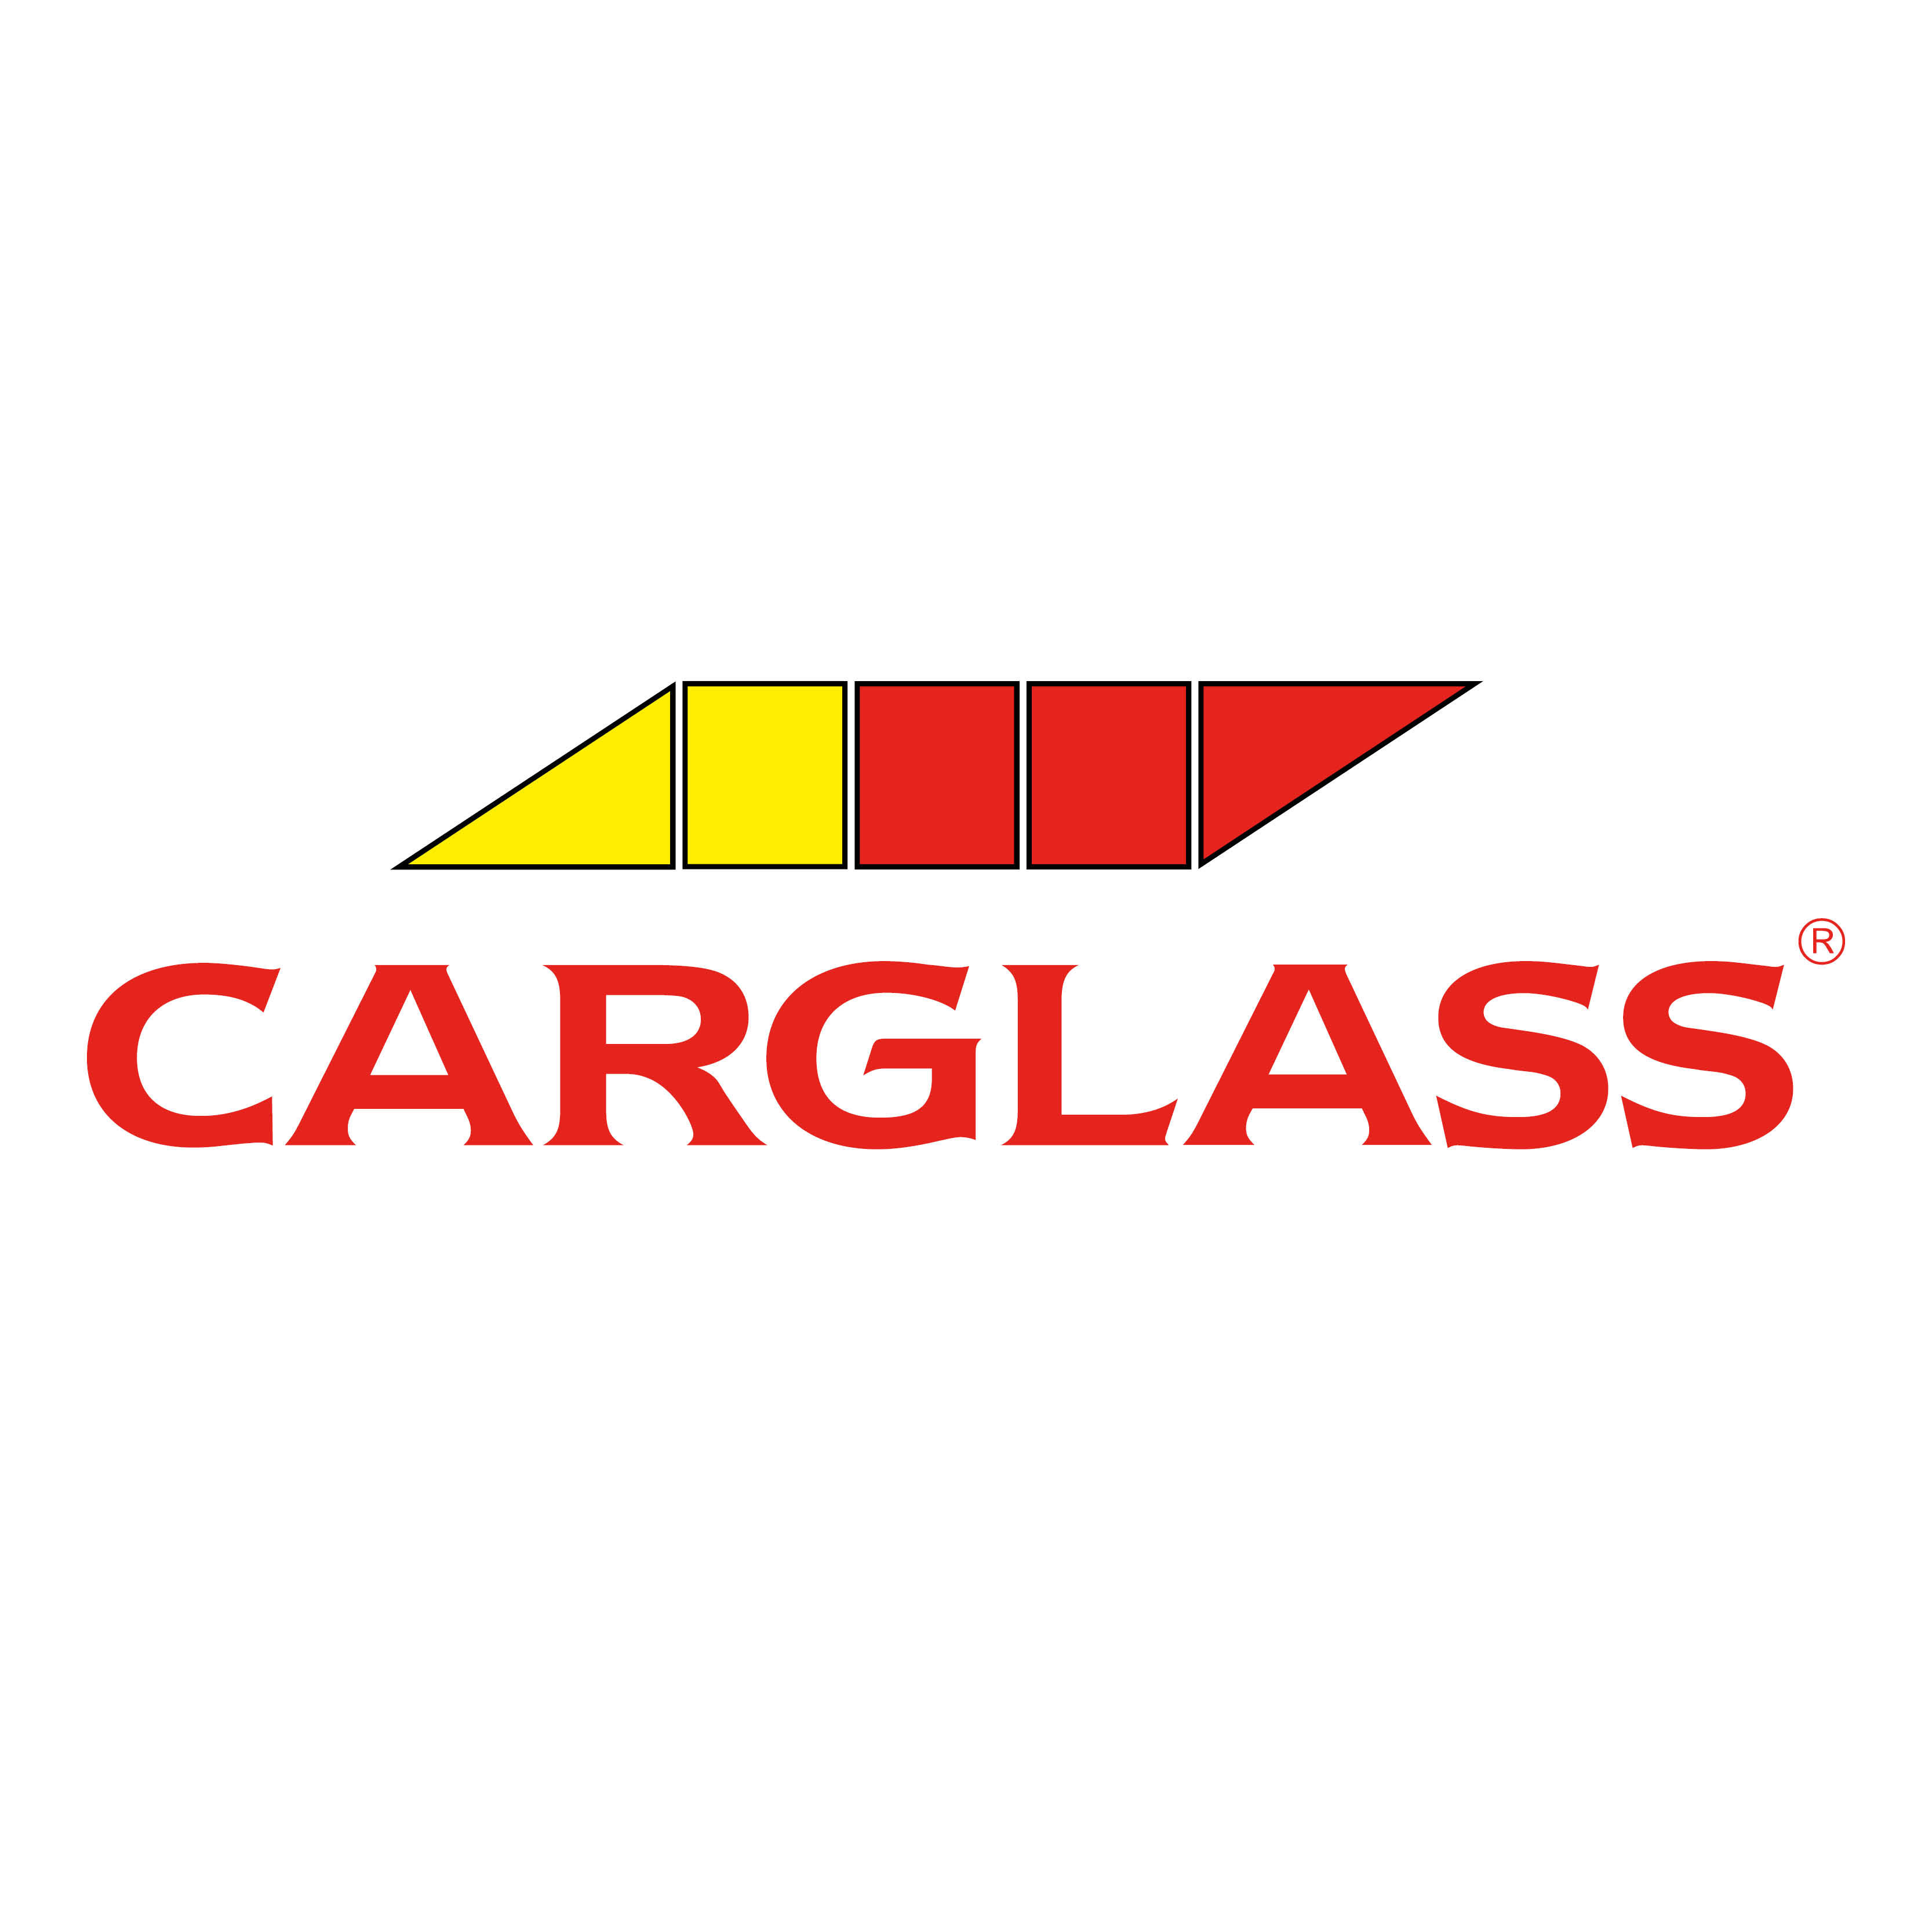 Carglass® Wr. Neustadt, Wiener Straße 113/2.2b in Wr. Neustadt